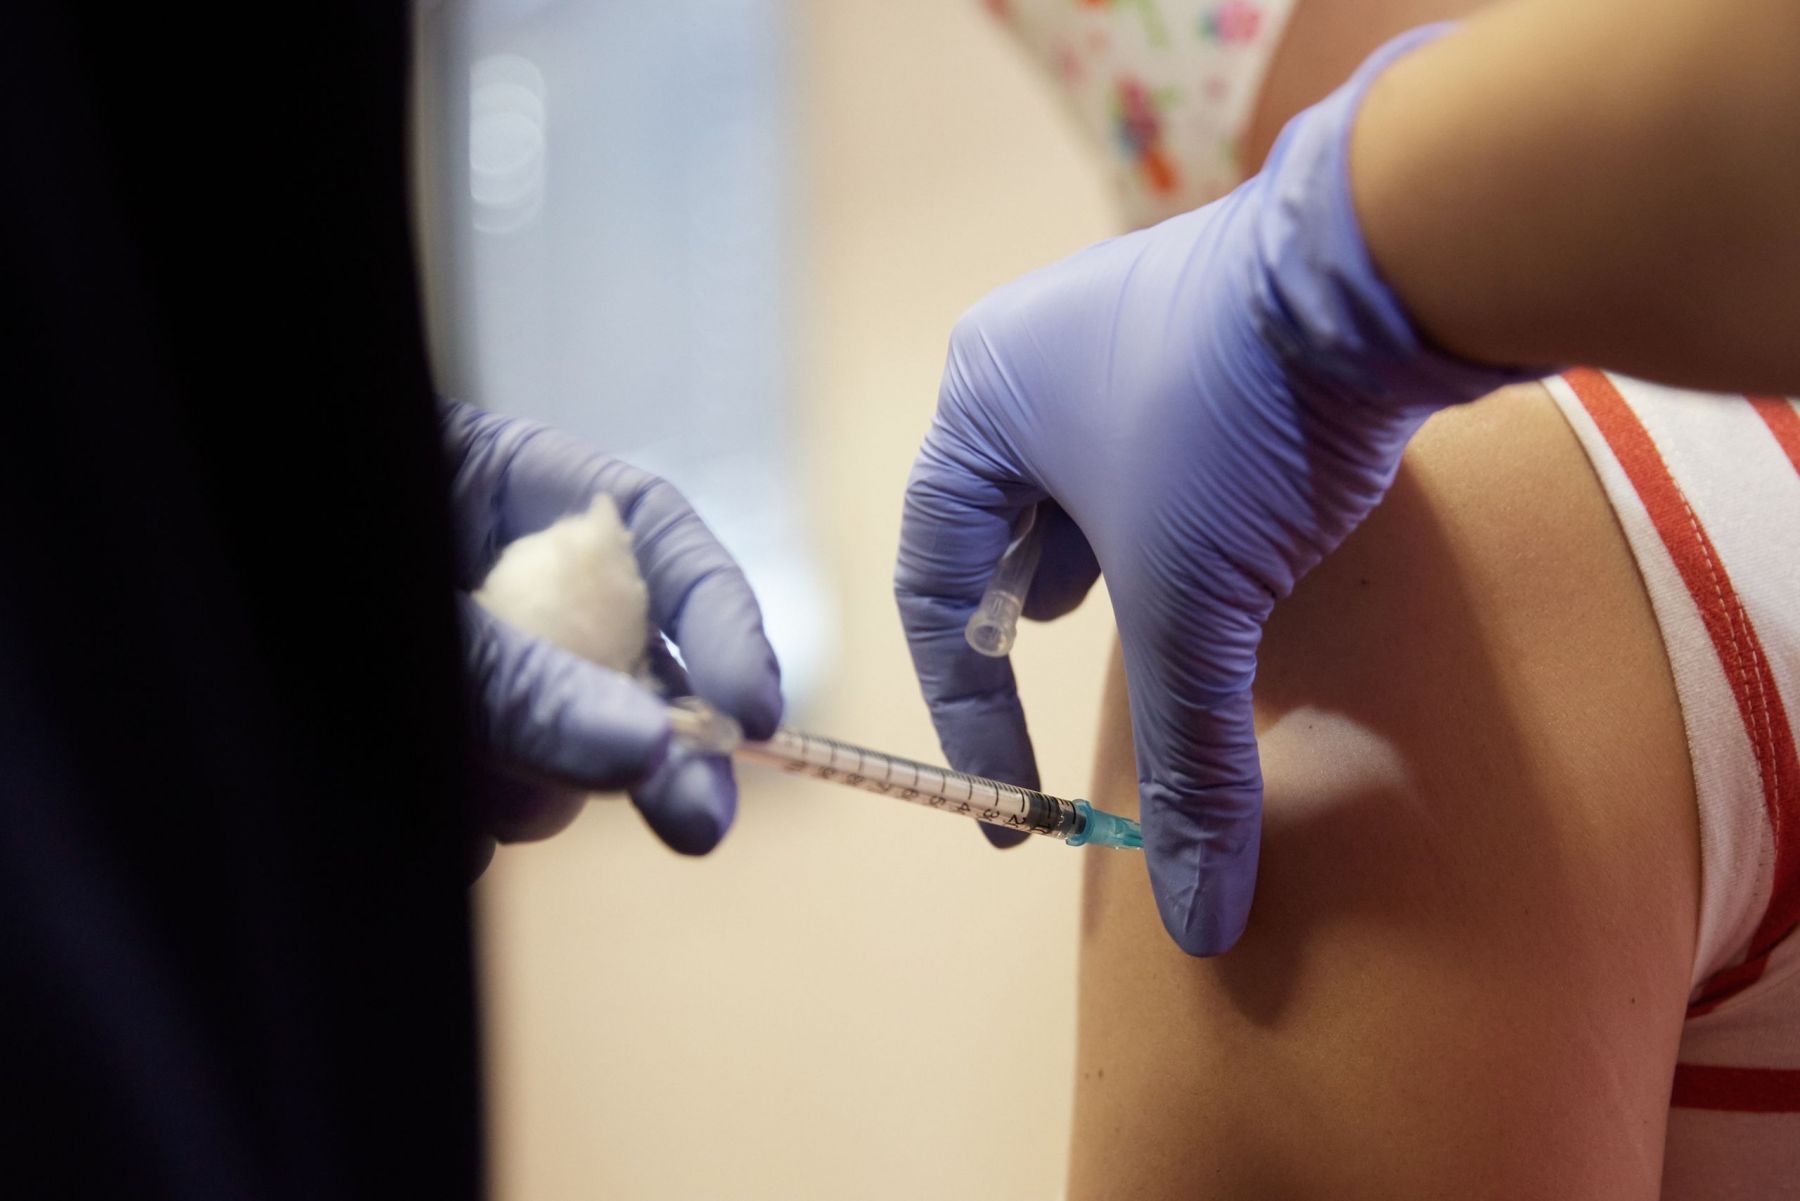 Εμβόλιο και αυτοάνοσο: Μια σπάνια παρενέργεια που πρέπει να έχουμε υπ΄όψιν